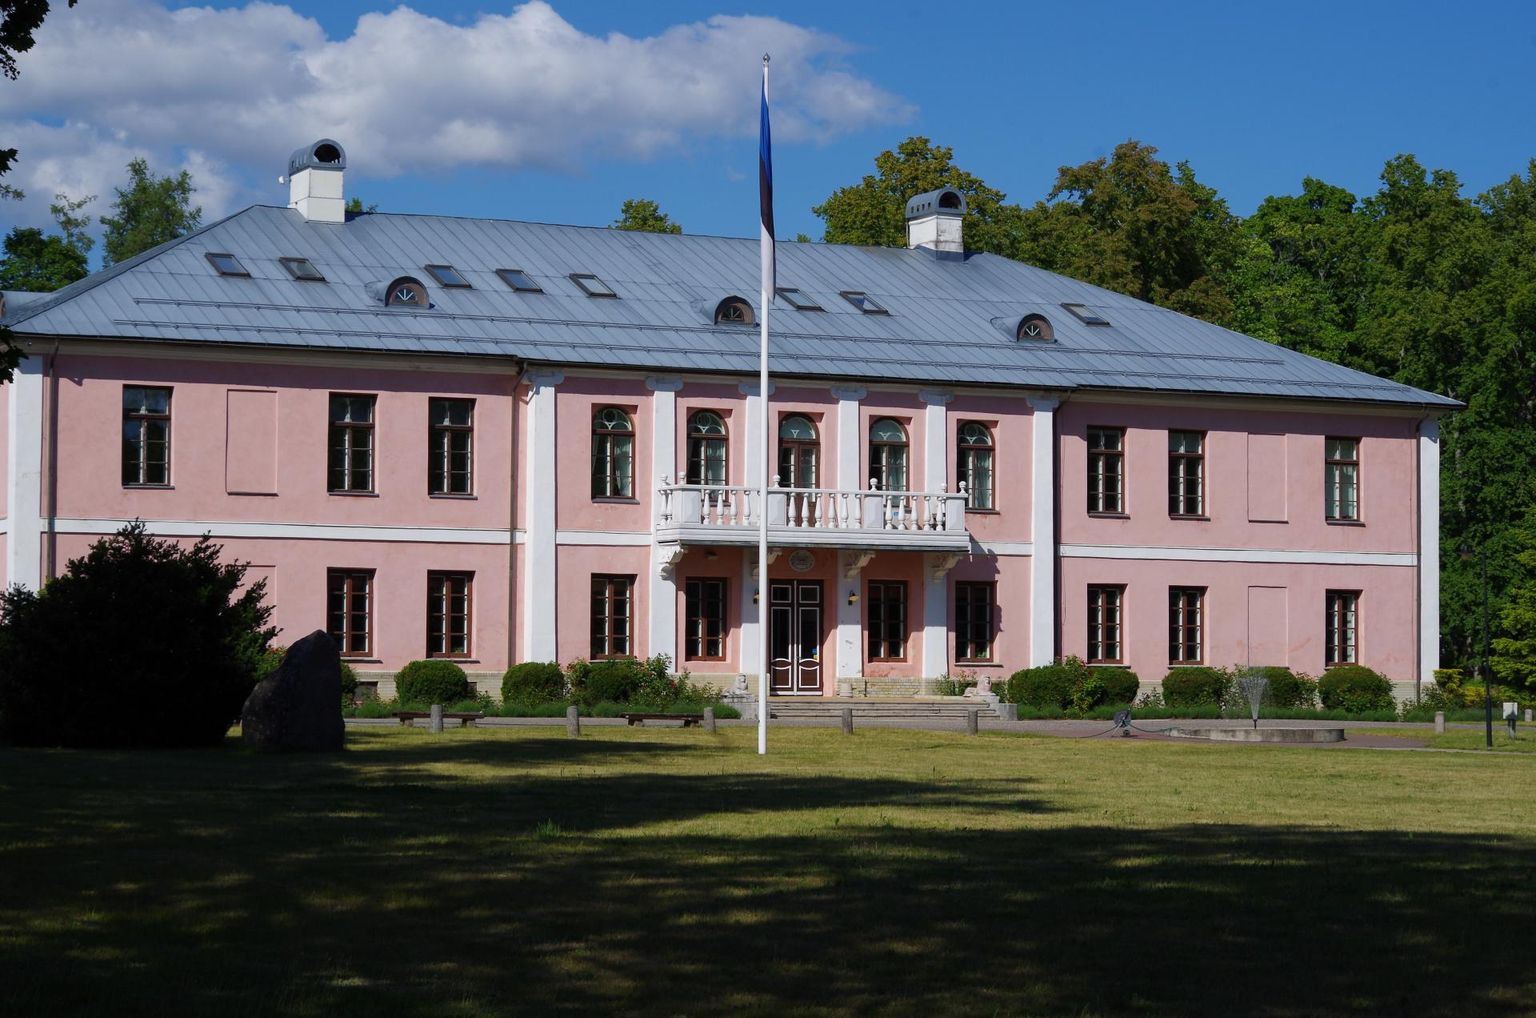 Kaunist Tõsta­maa mõisa ning seda ümbritsevat parki ja kõrvalhoonet hoiab elus tuntud Tõstamaa mõisakool, kus on sisse seatud ka väike ­muuseum.

 